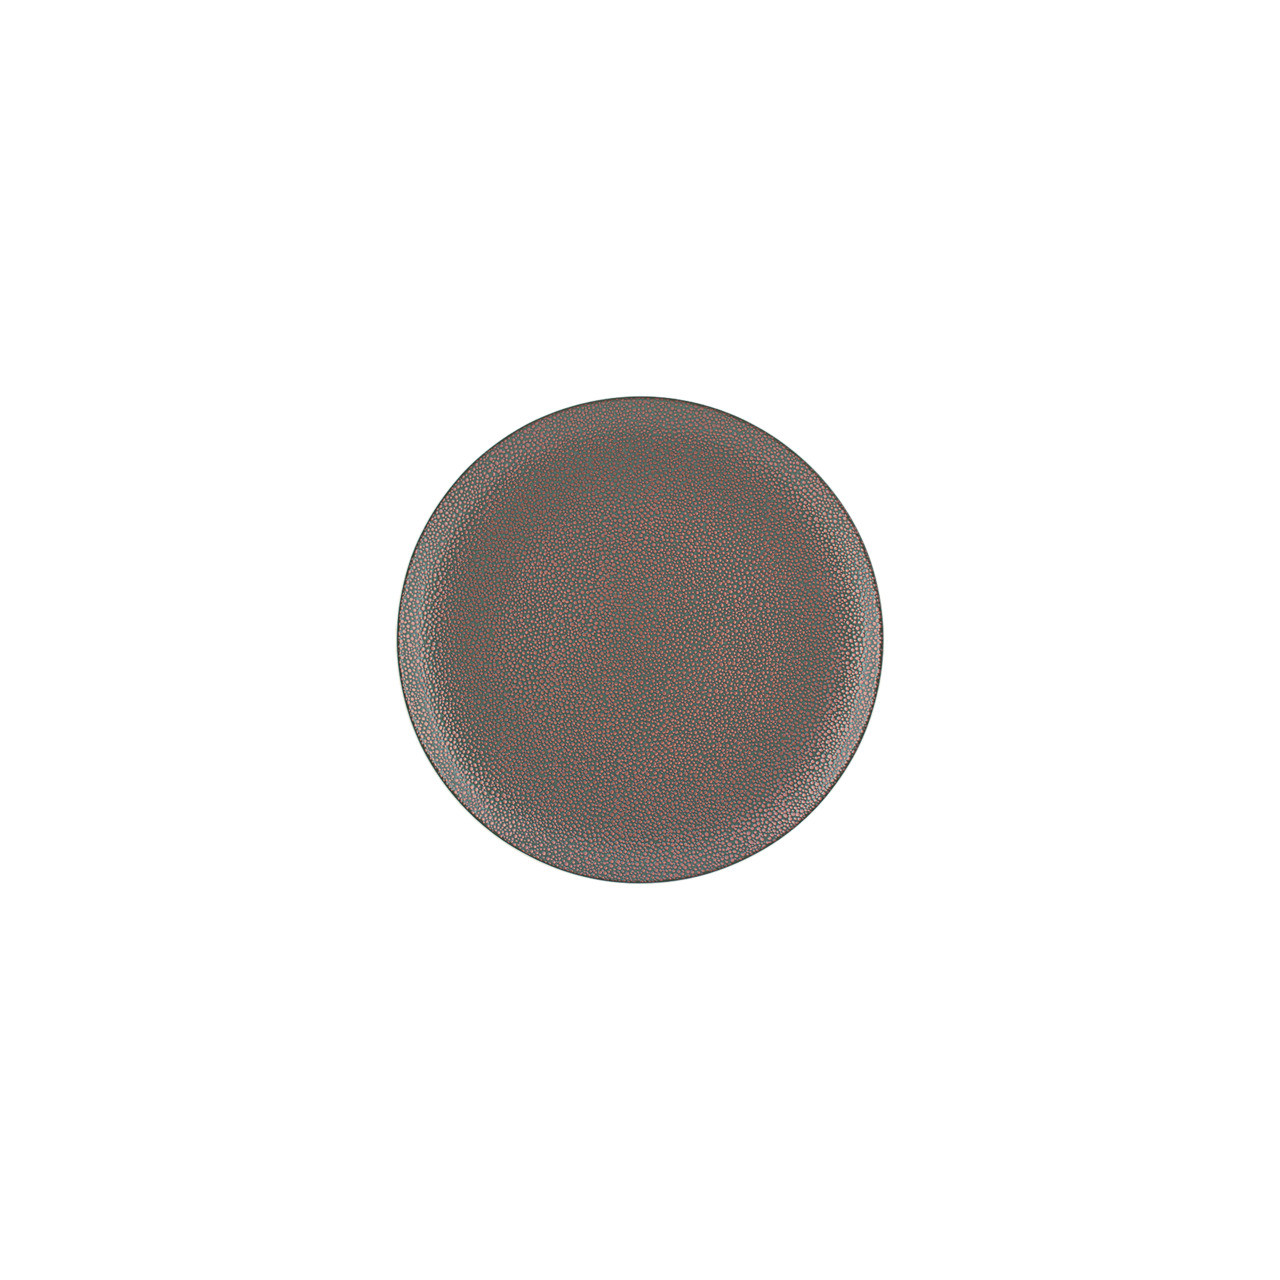 Pearls, Coupteller flach rund ø 160 mm metallic copper